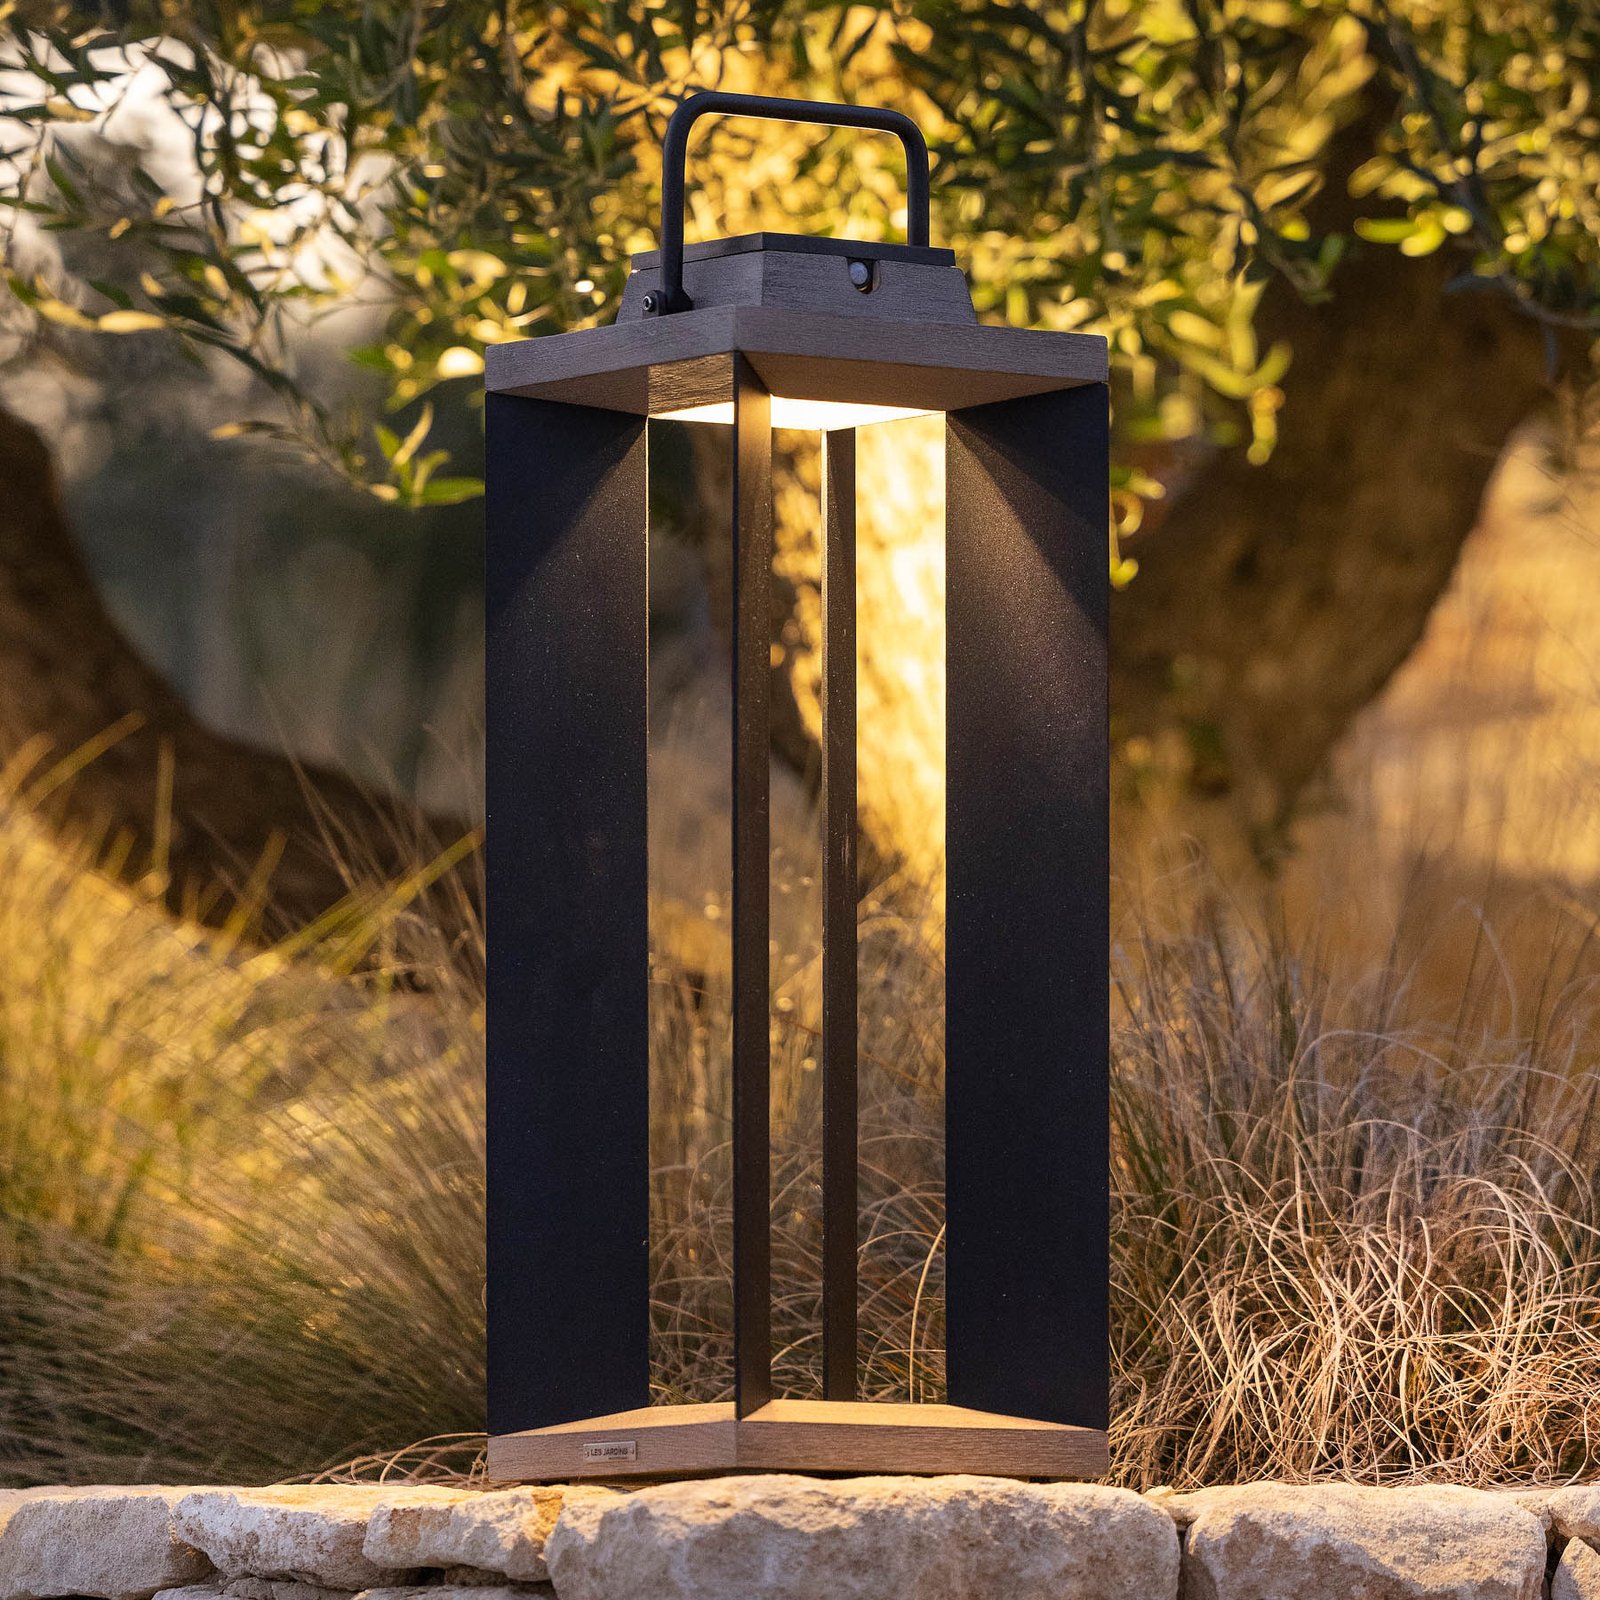 Teckalu solar lantern, Duratek/black, 65.5 cm